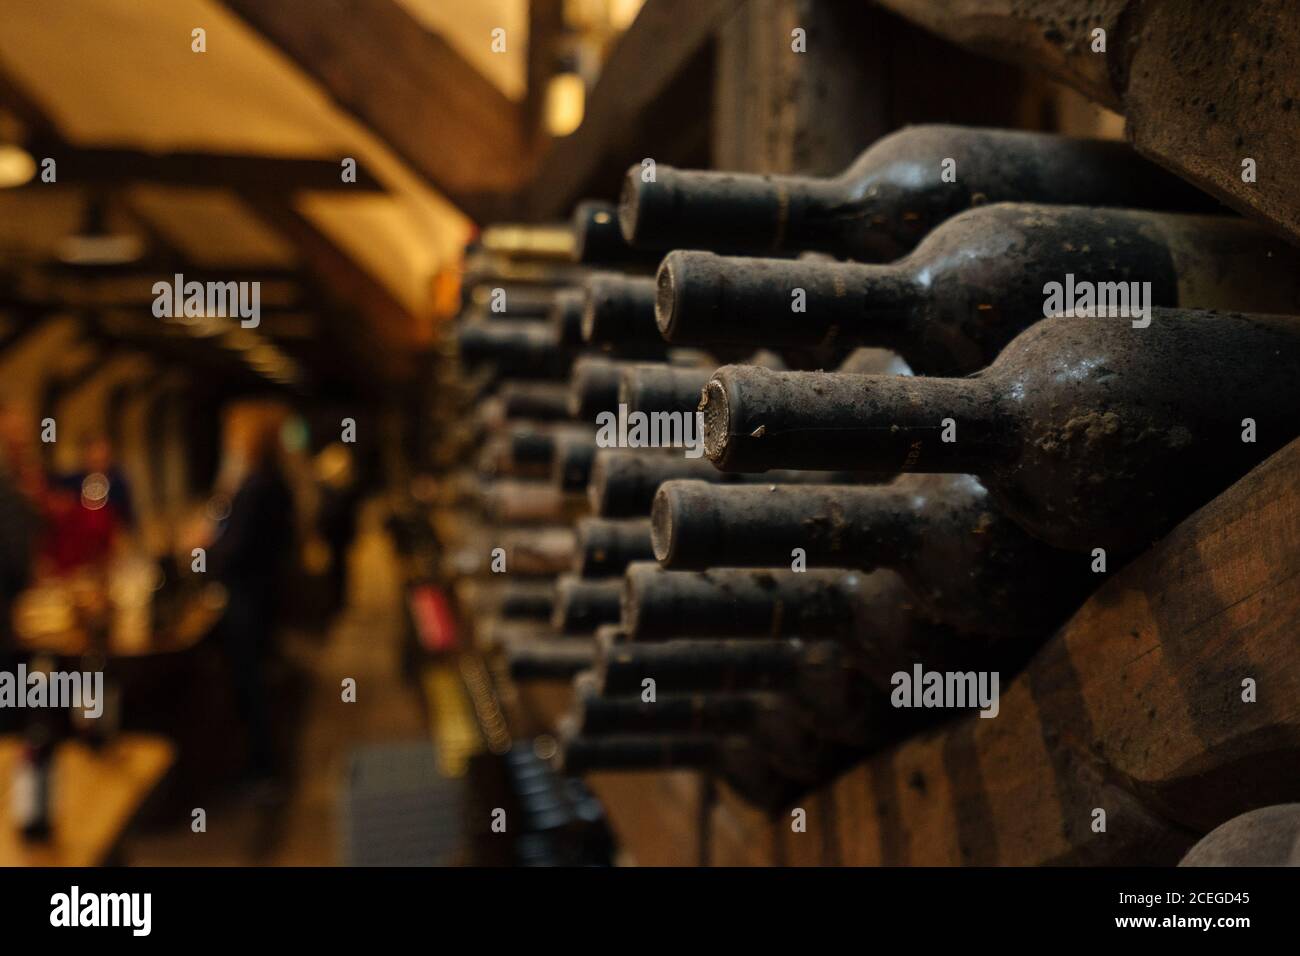 Delicata ed elegante volta di vino piena di bottiglie sdraiate al buio ripiani in legno con luce che splende dall'alto Foto Stock